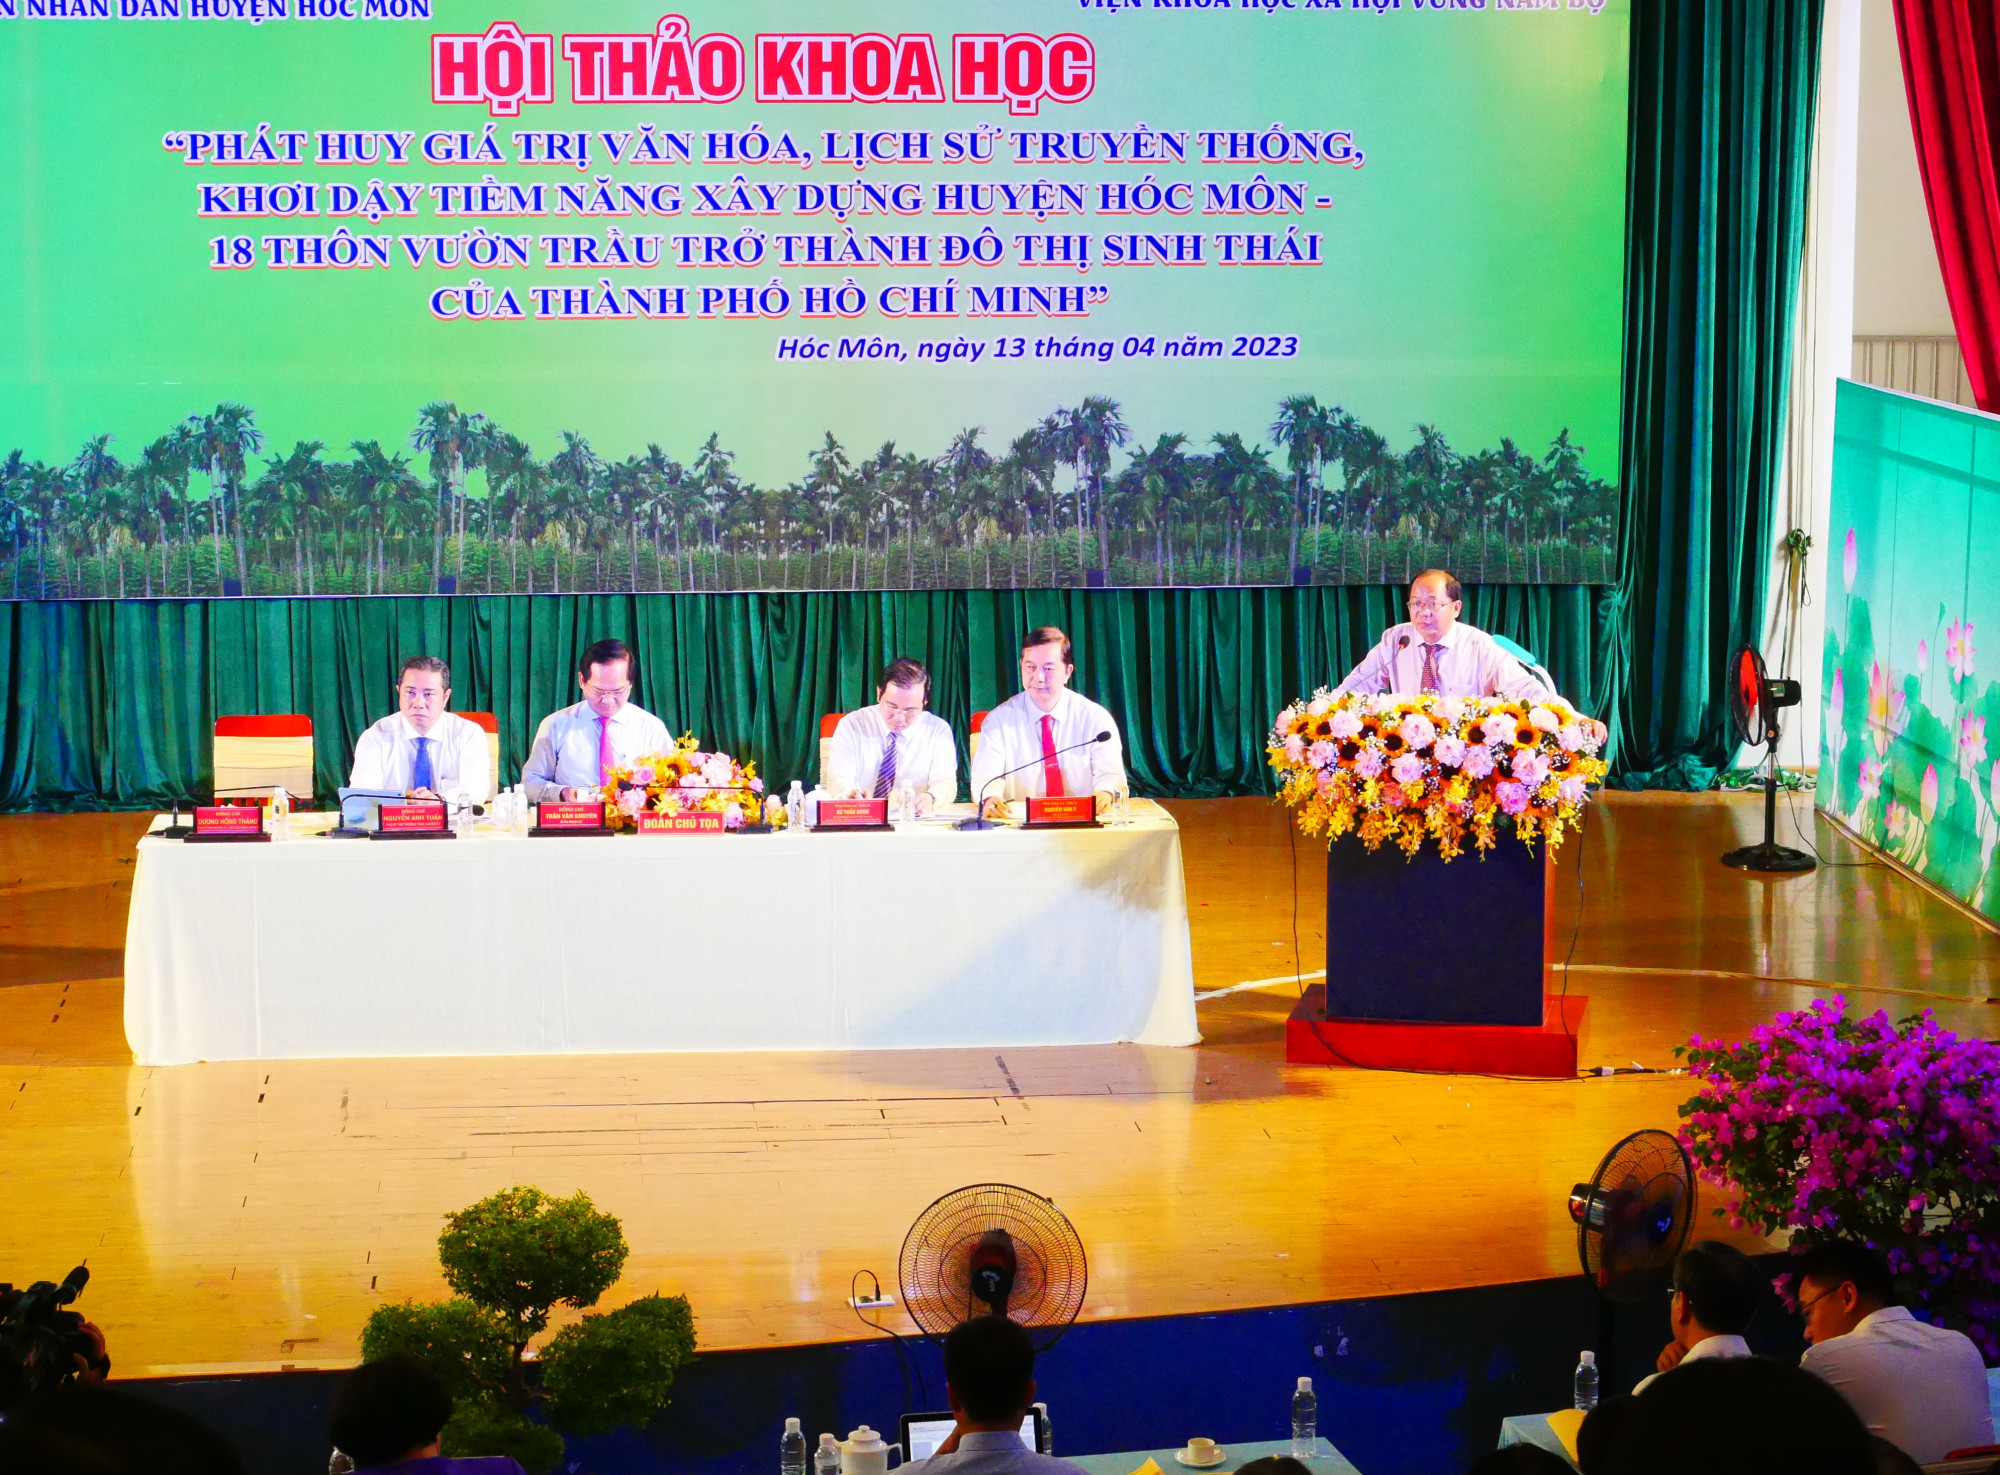 Bà Nguyễn Thị Hồng - nguyên Phó chủ tịch UBND TPHCM phát biểu tại hội thảo